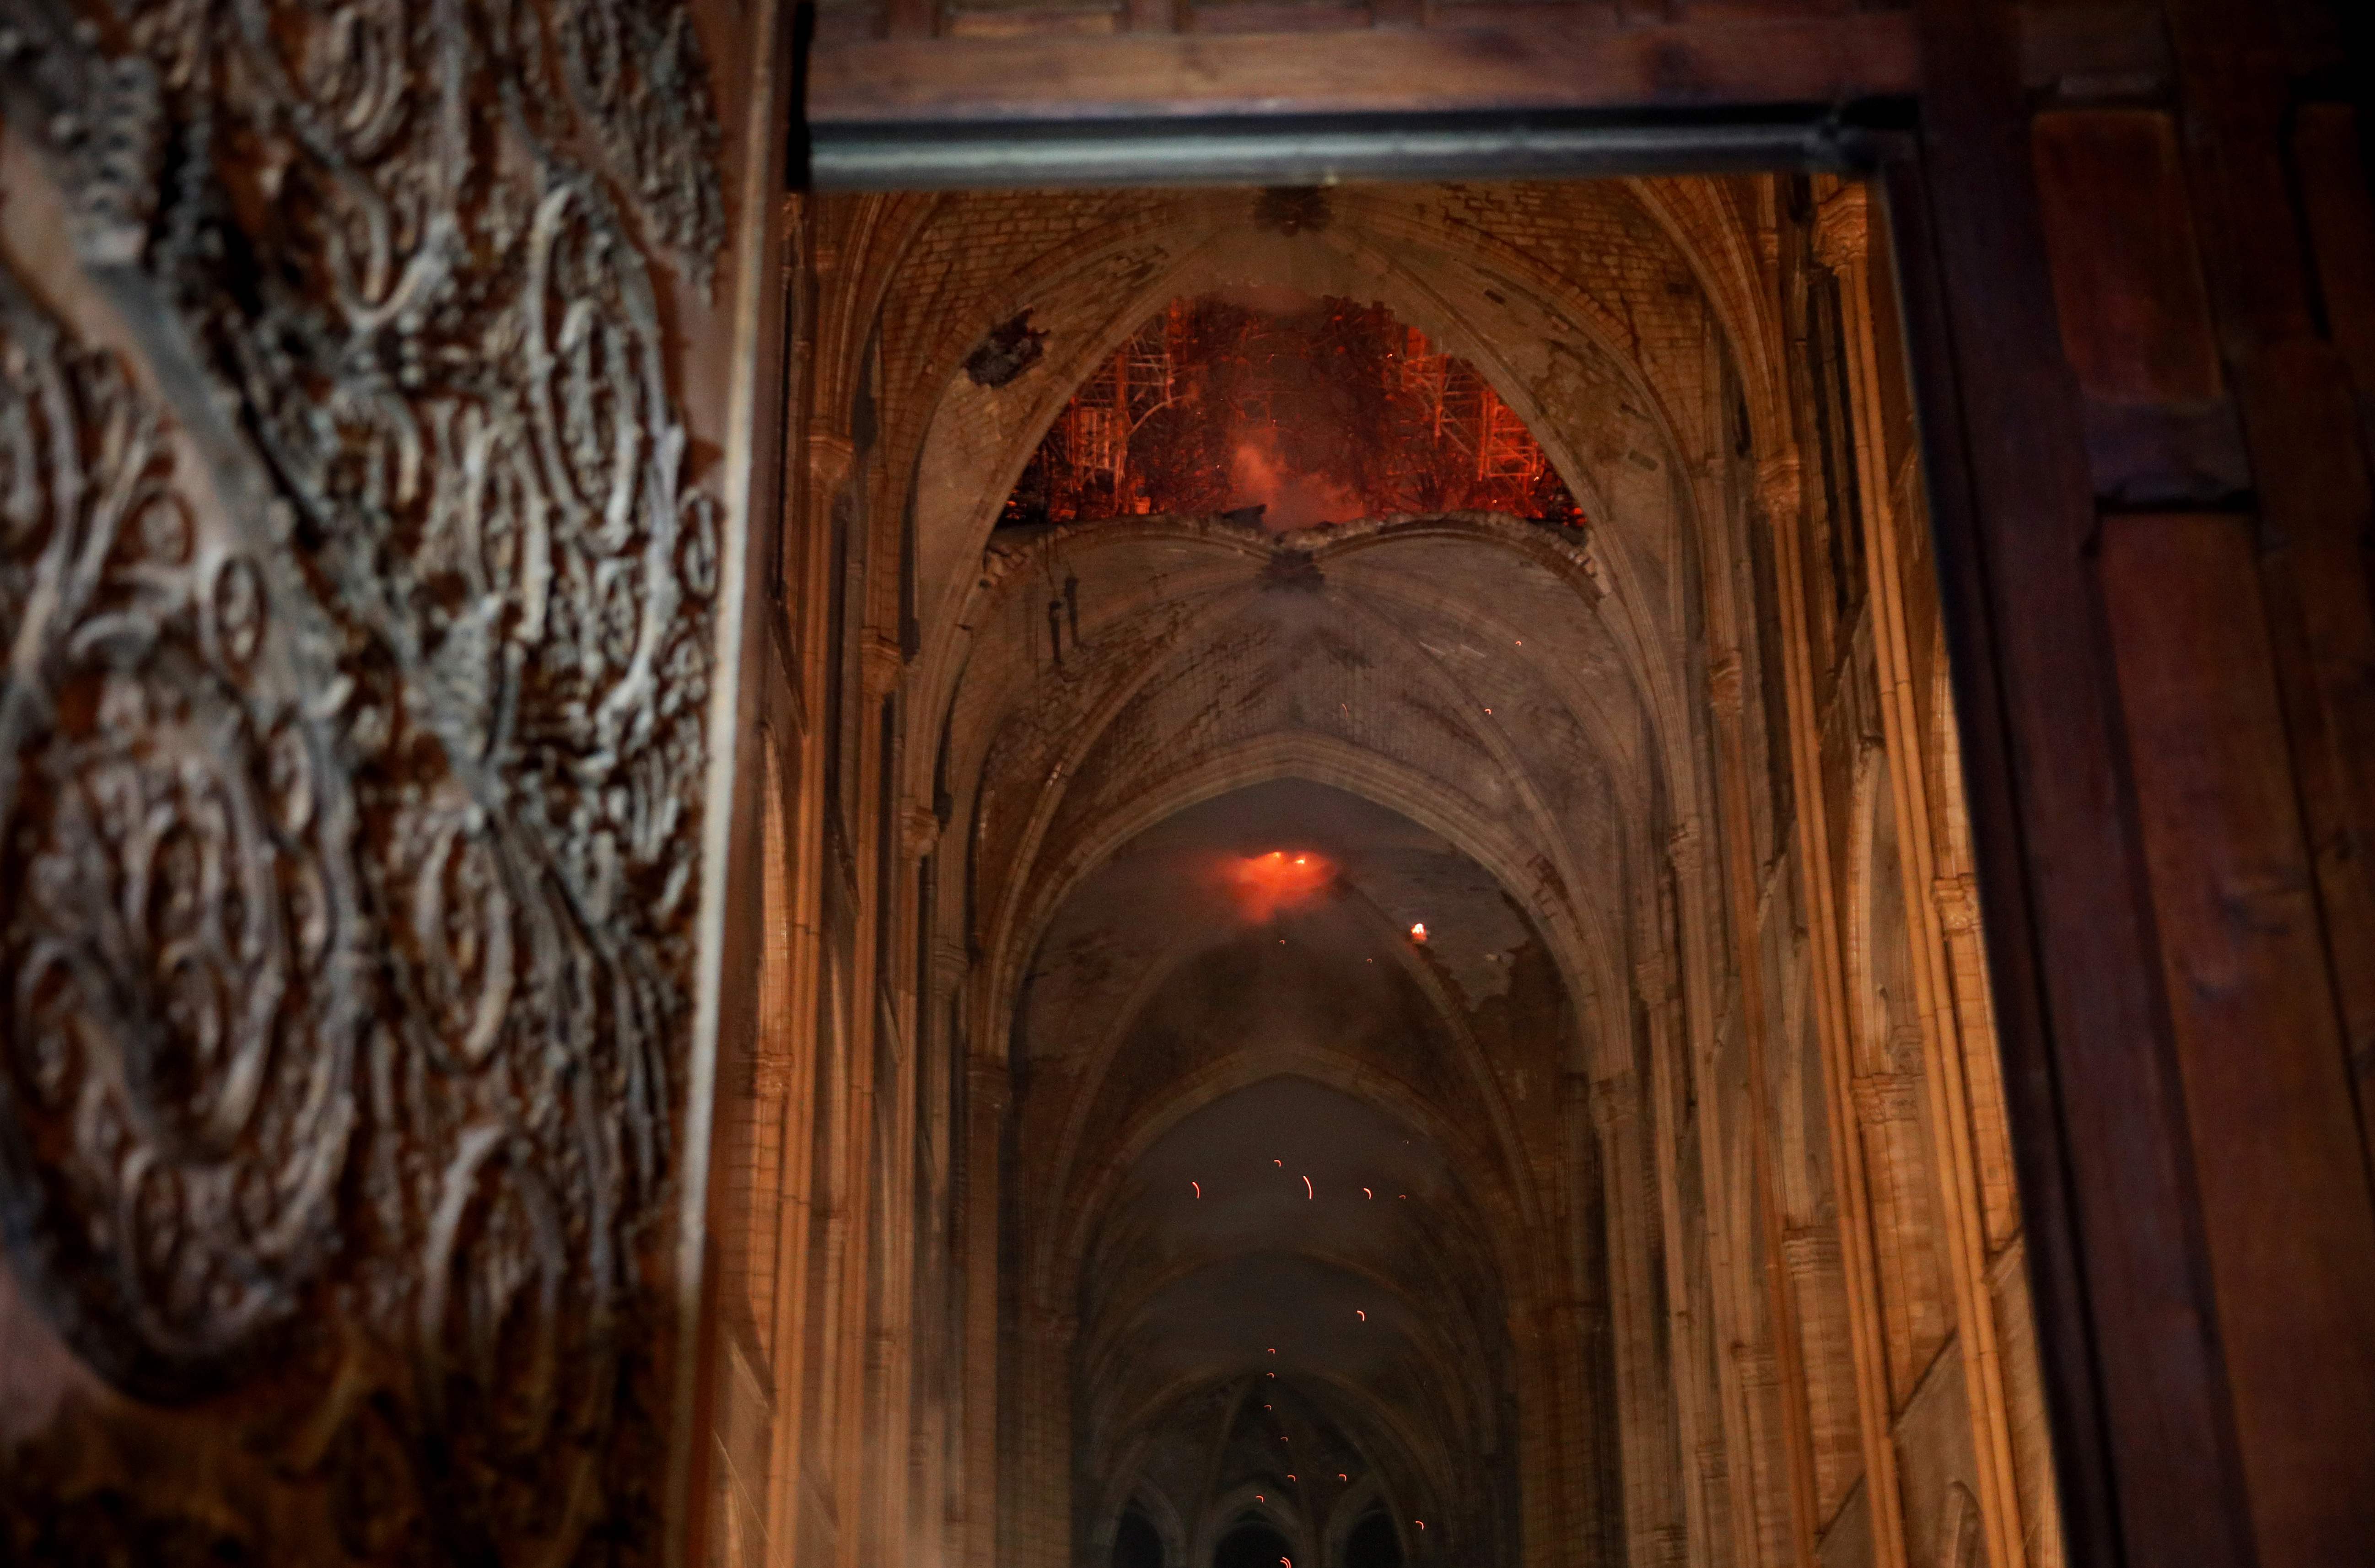 Llamas y humo en el interior de la Catedral de Notre Dame, ícono de la historia francesa y occidental. (Foto Prensa Libre: AFP)